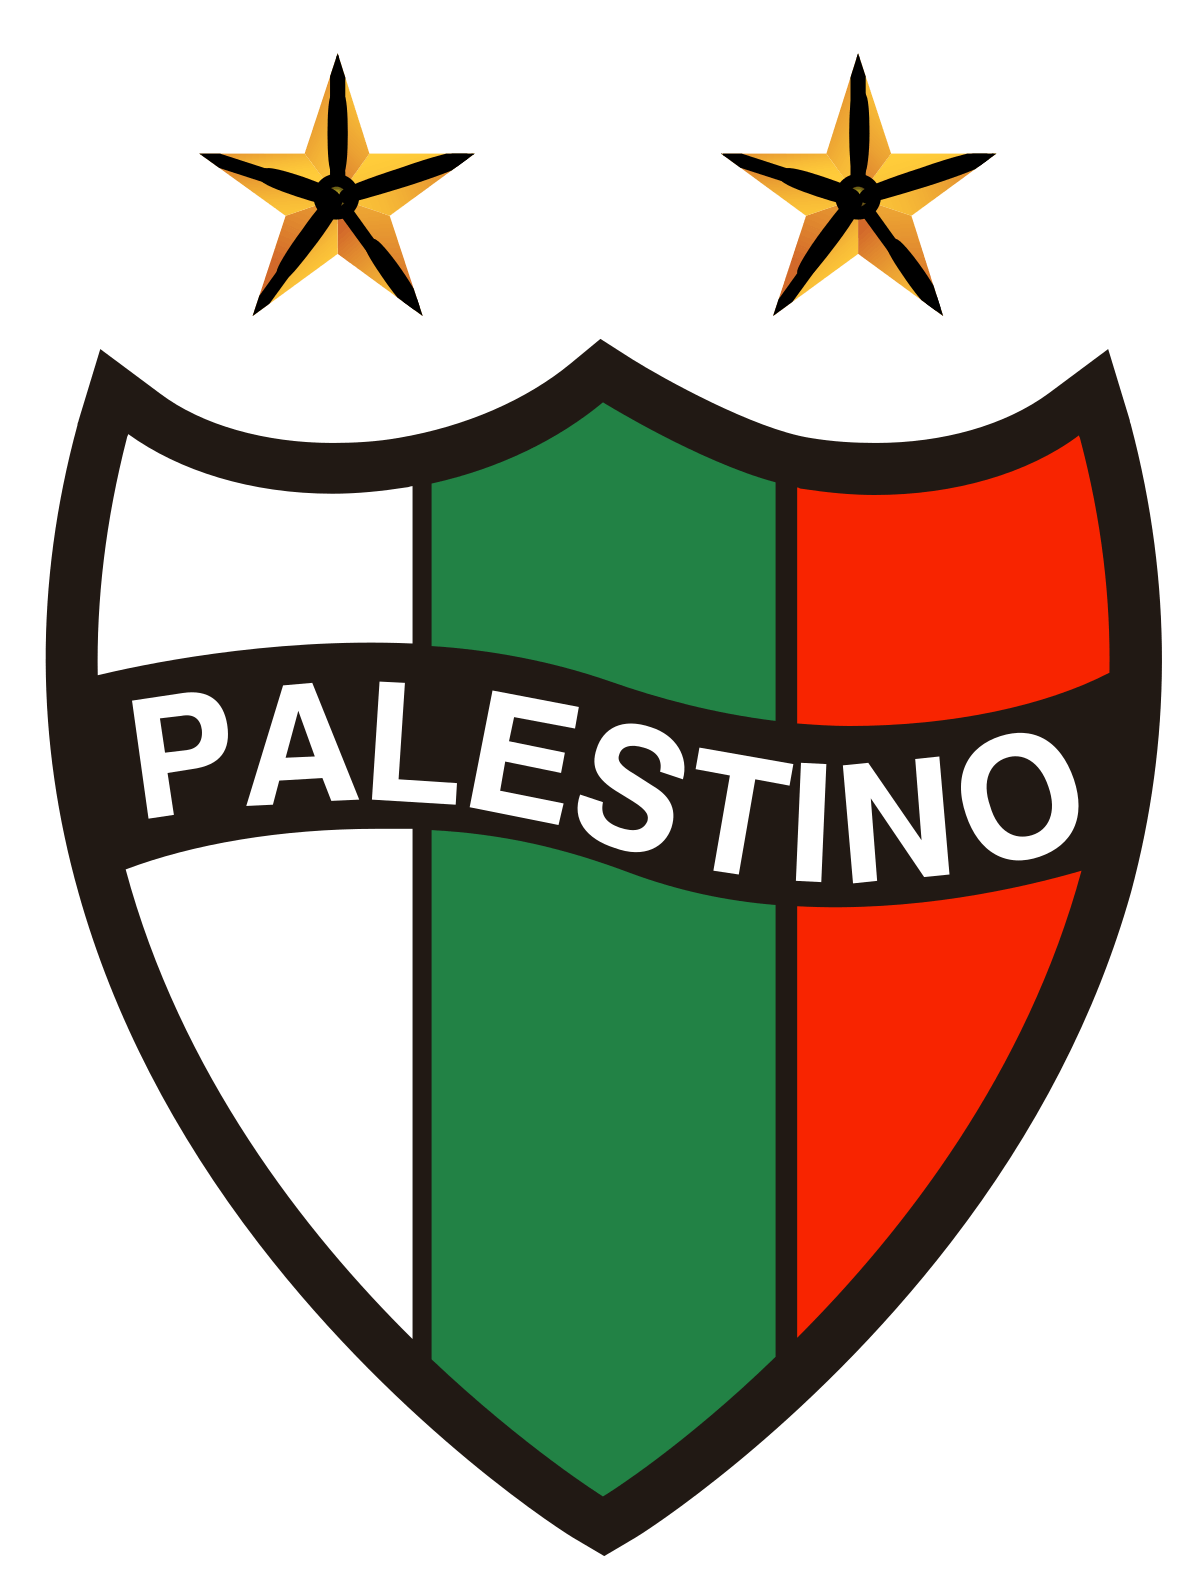 باشگاه ورزشی پالستینو (Club Deportivo Palestino)